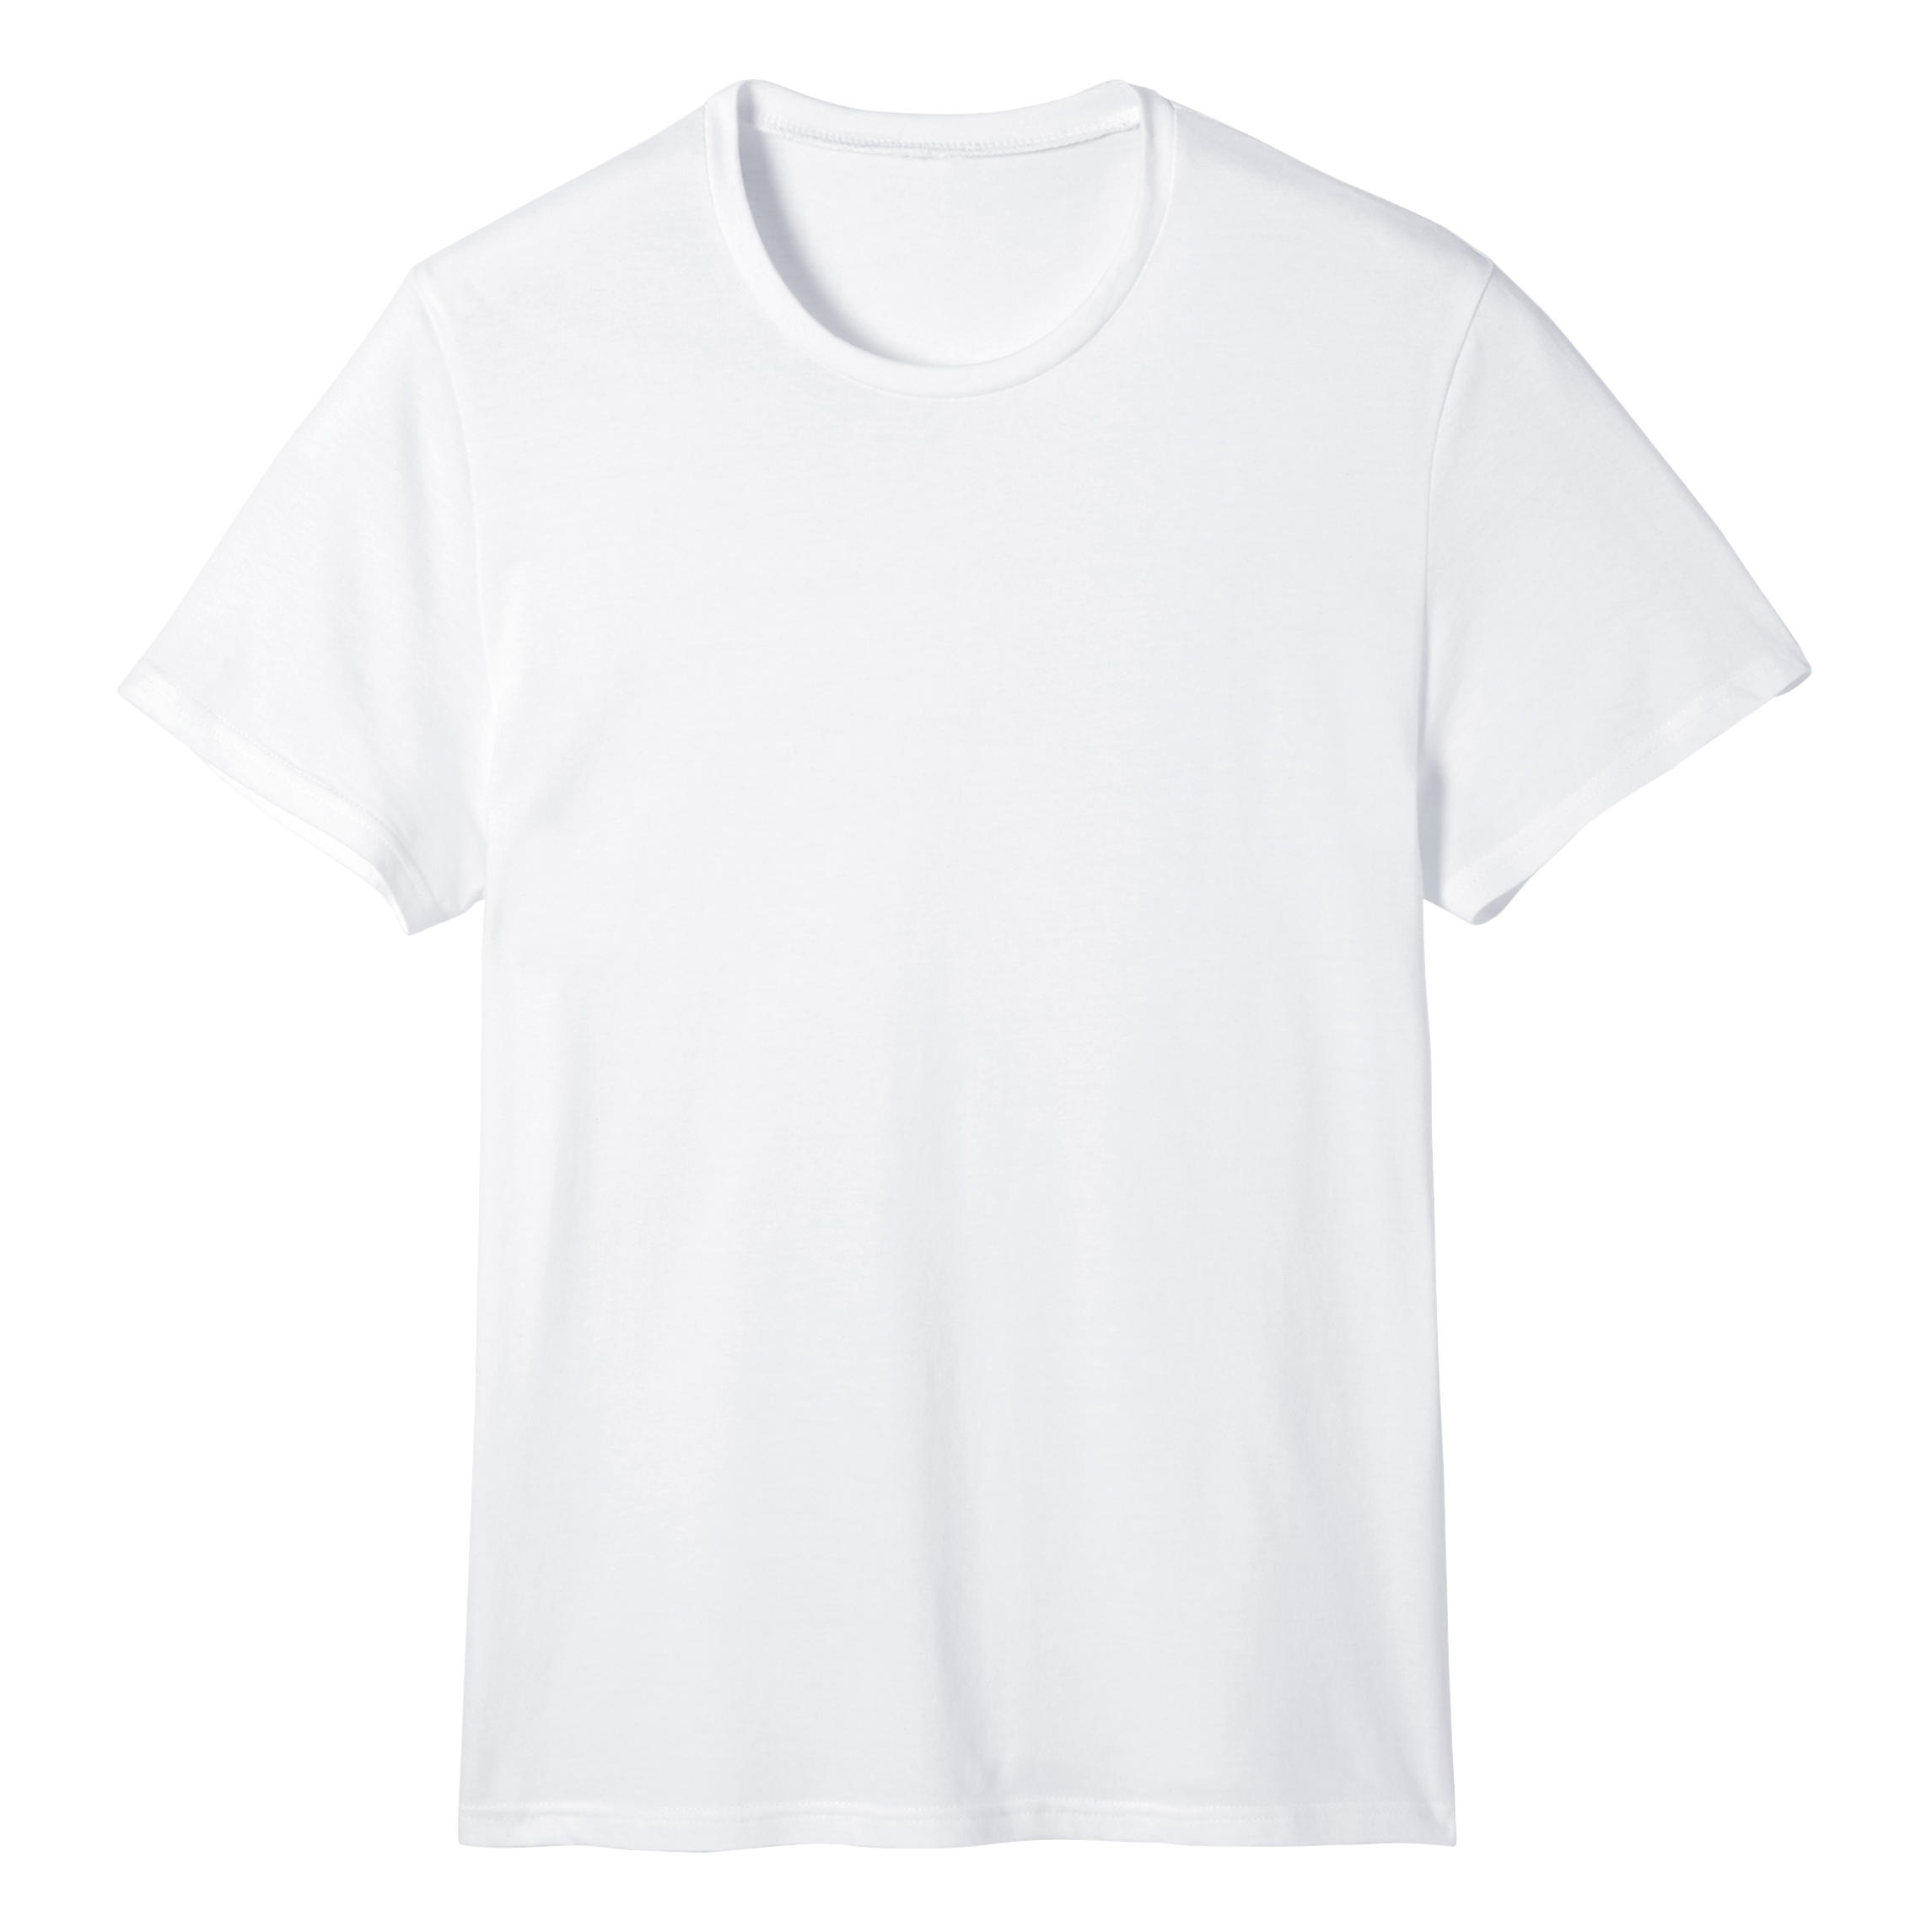 T-shirt uomo fitness SPORTEE 100 bianca NYAMBA | DECATHLON